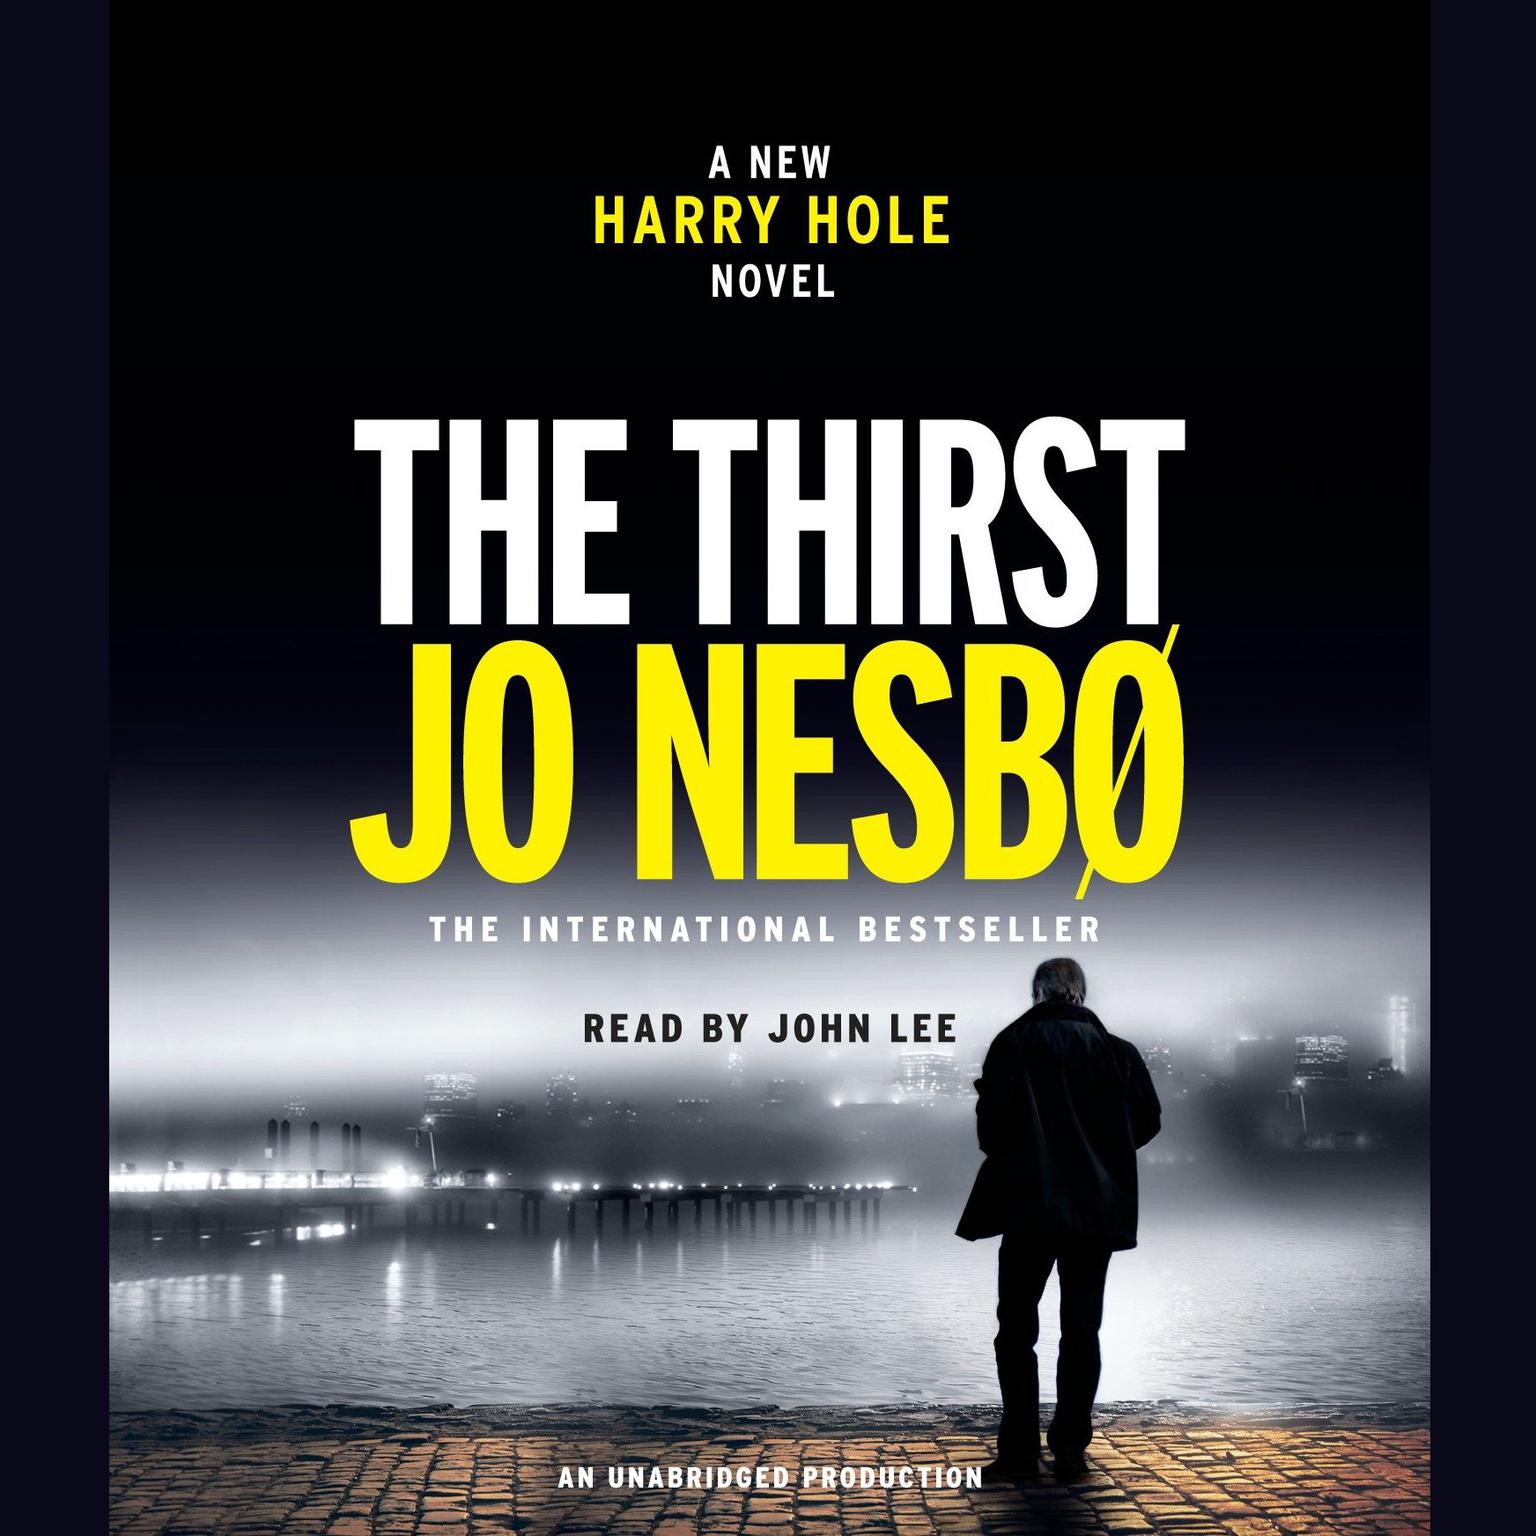 The Thirst: A Harry Hole Novel Audiobook, by Jo Nesbø